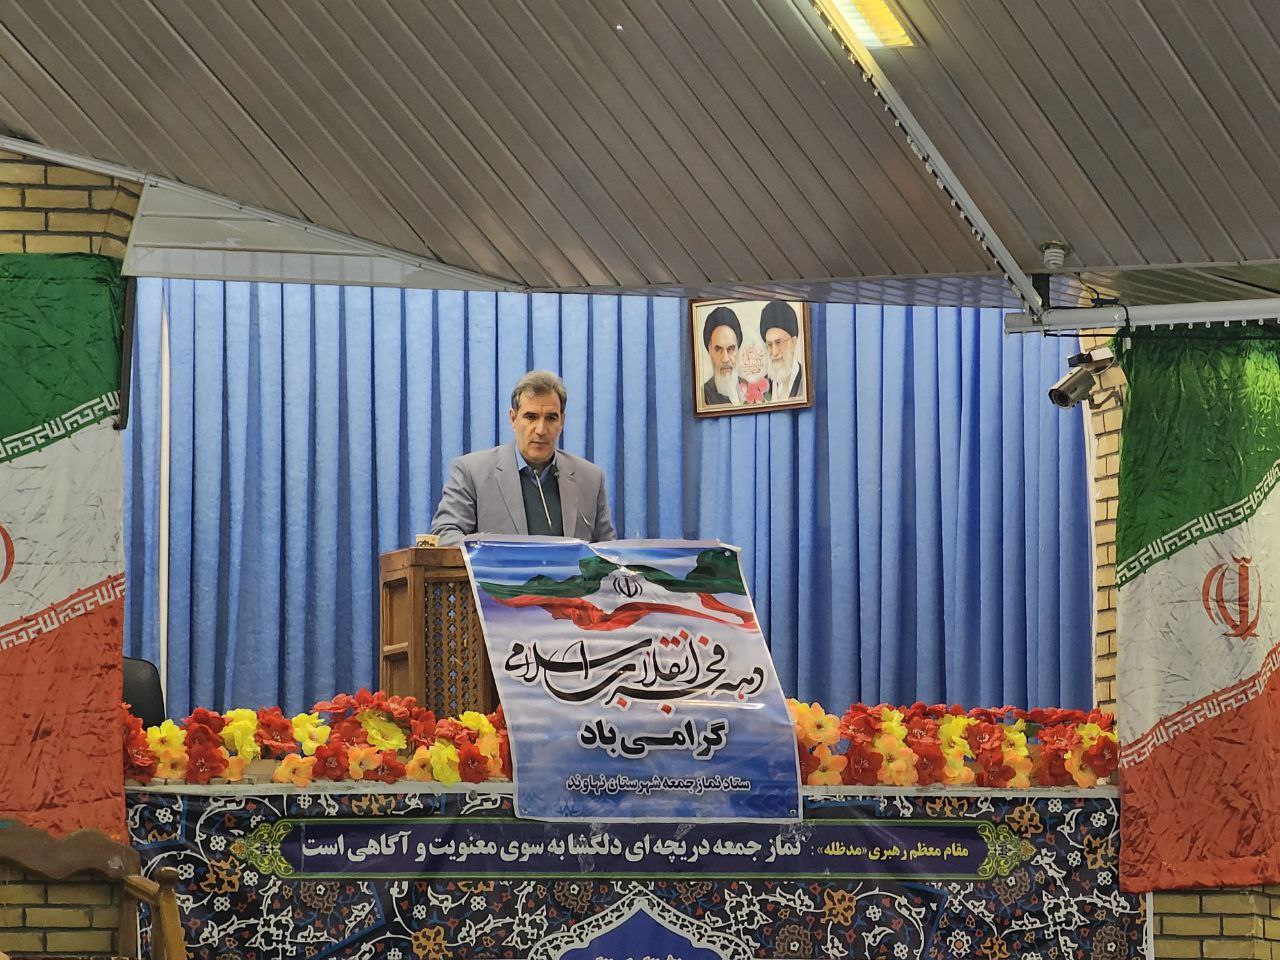 سخنرانی ضرغام احمدوند فرماندارنهاوند در بین صلاتین مراسم عبادی سیاسی نماز جمعه